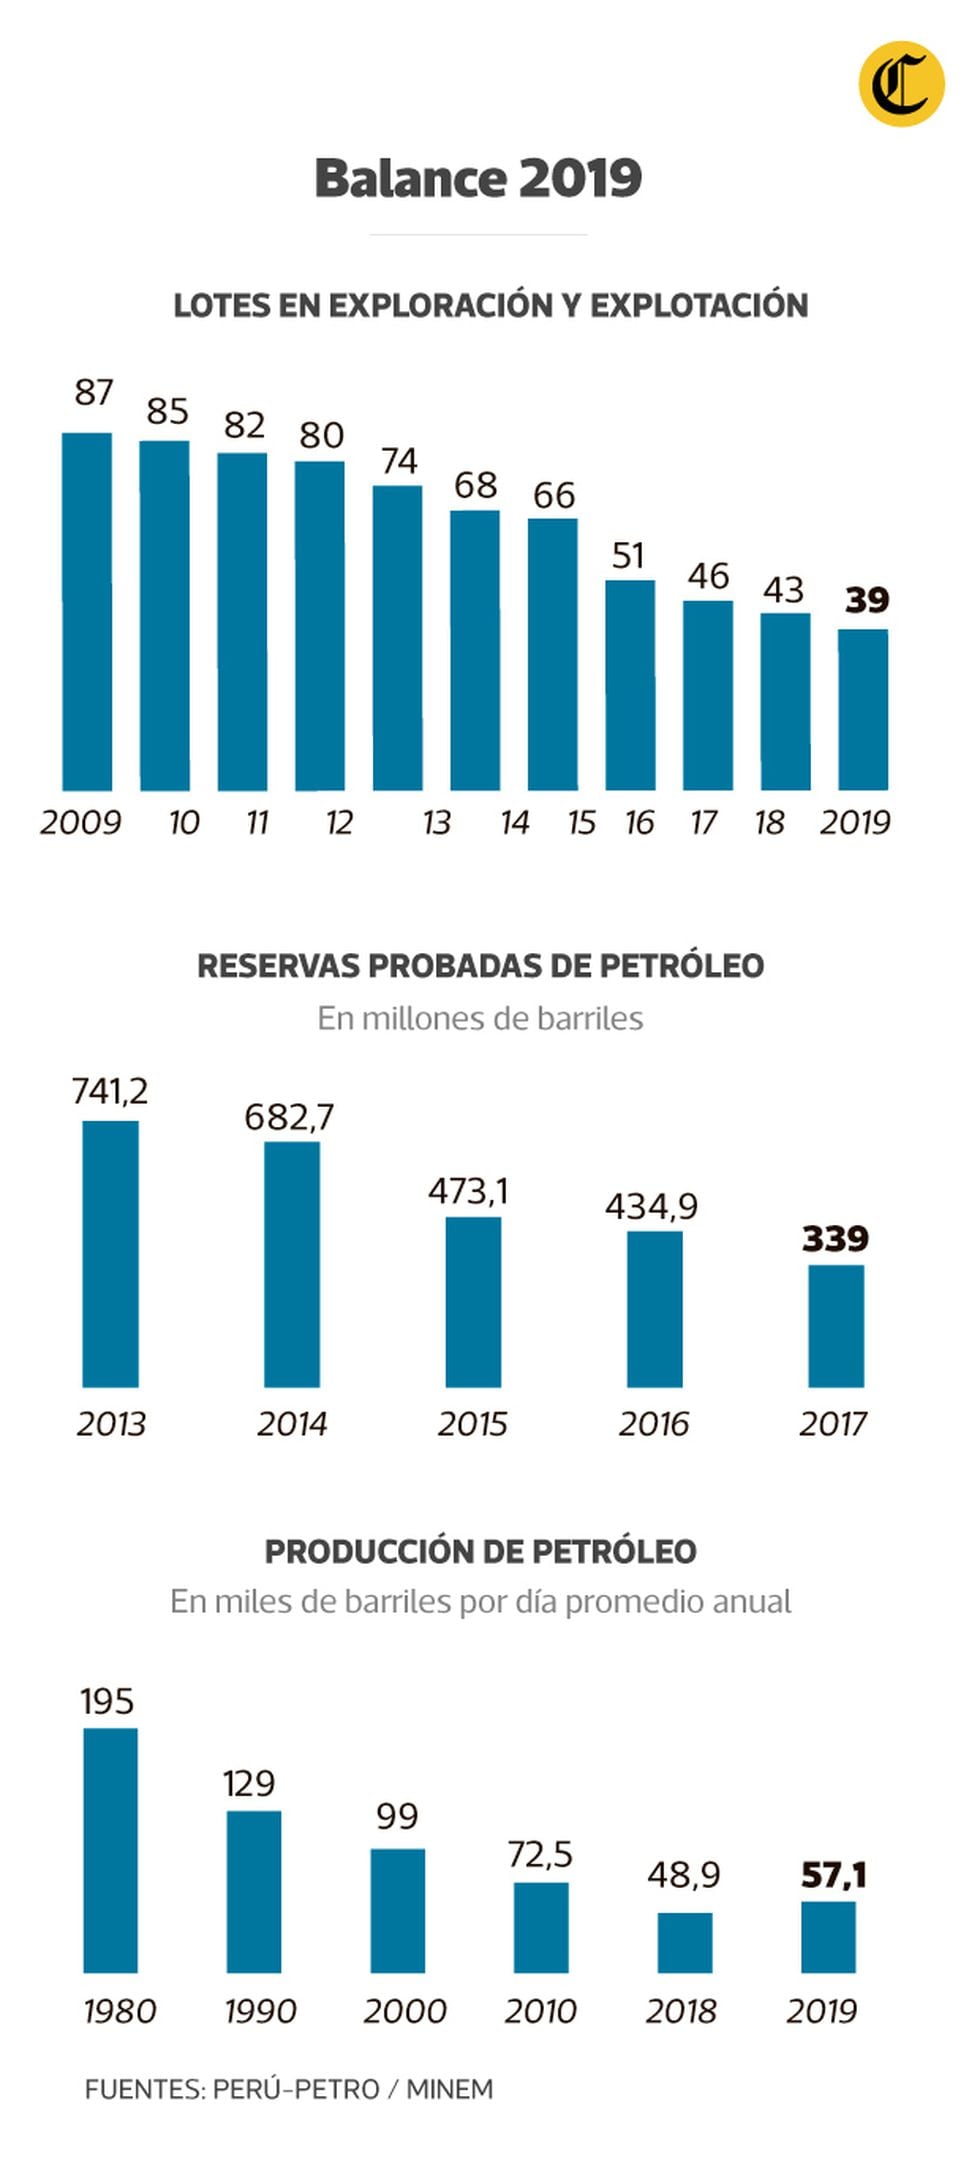 El sub-sector petróleo se encuentra en crisis, a diferencia del gas, que recibe atención prioritaria del gobierno.